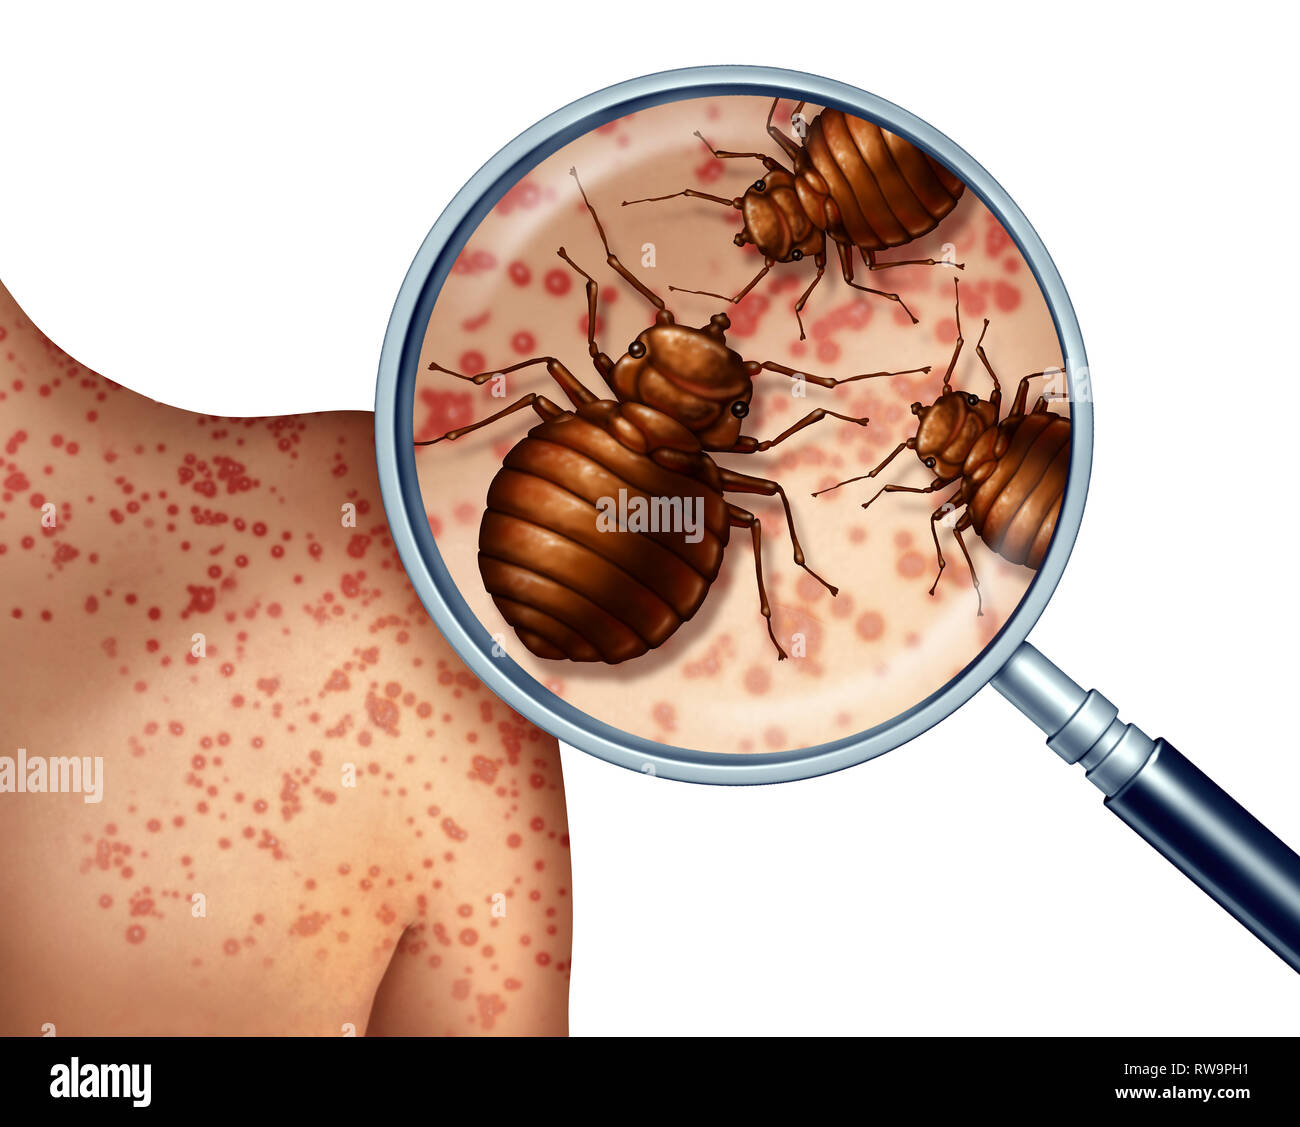 Les morsures de punaises de lit sur la peau humaine ou infestation bedbug concept comme un grossissement close up d'insectes nuisibles comme un symbole de l'hygiène et la santé. Banque D'Images